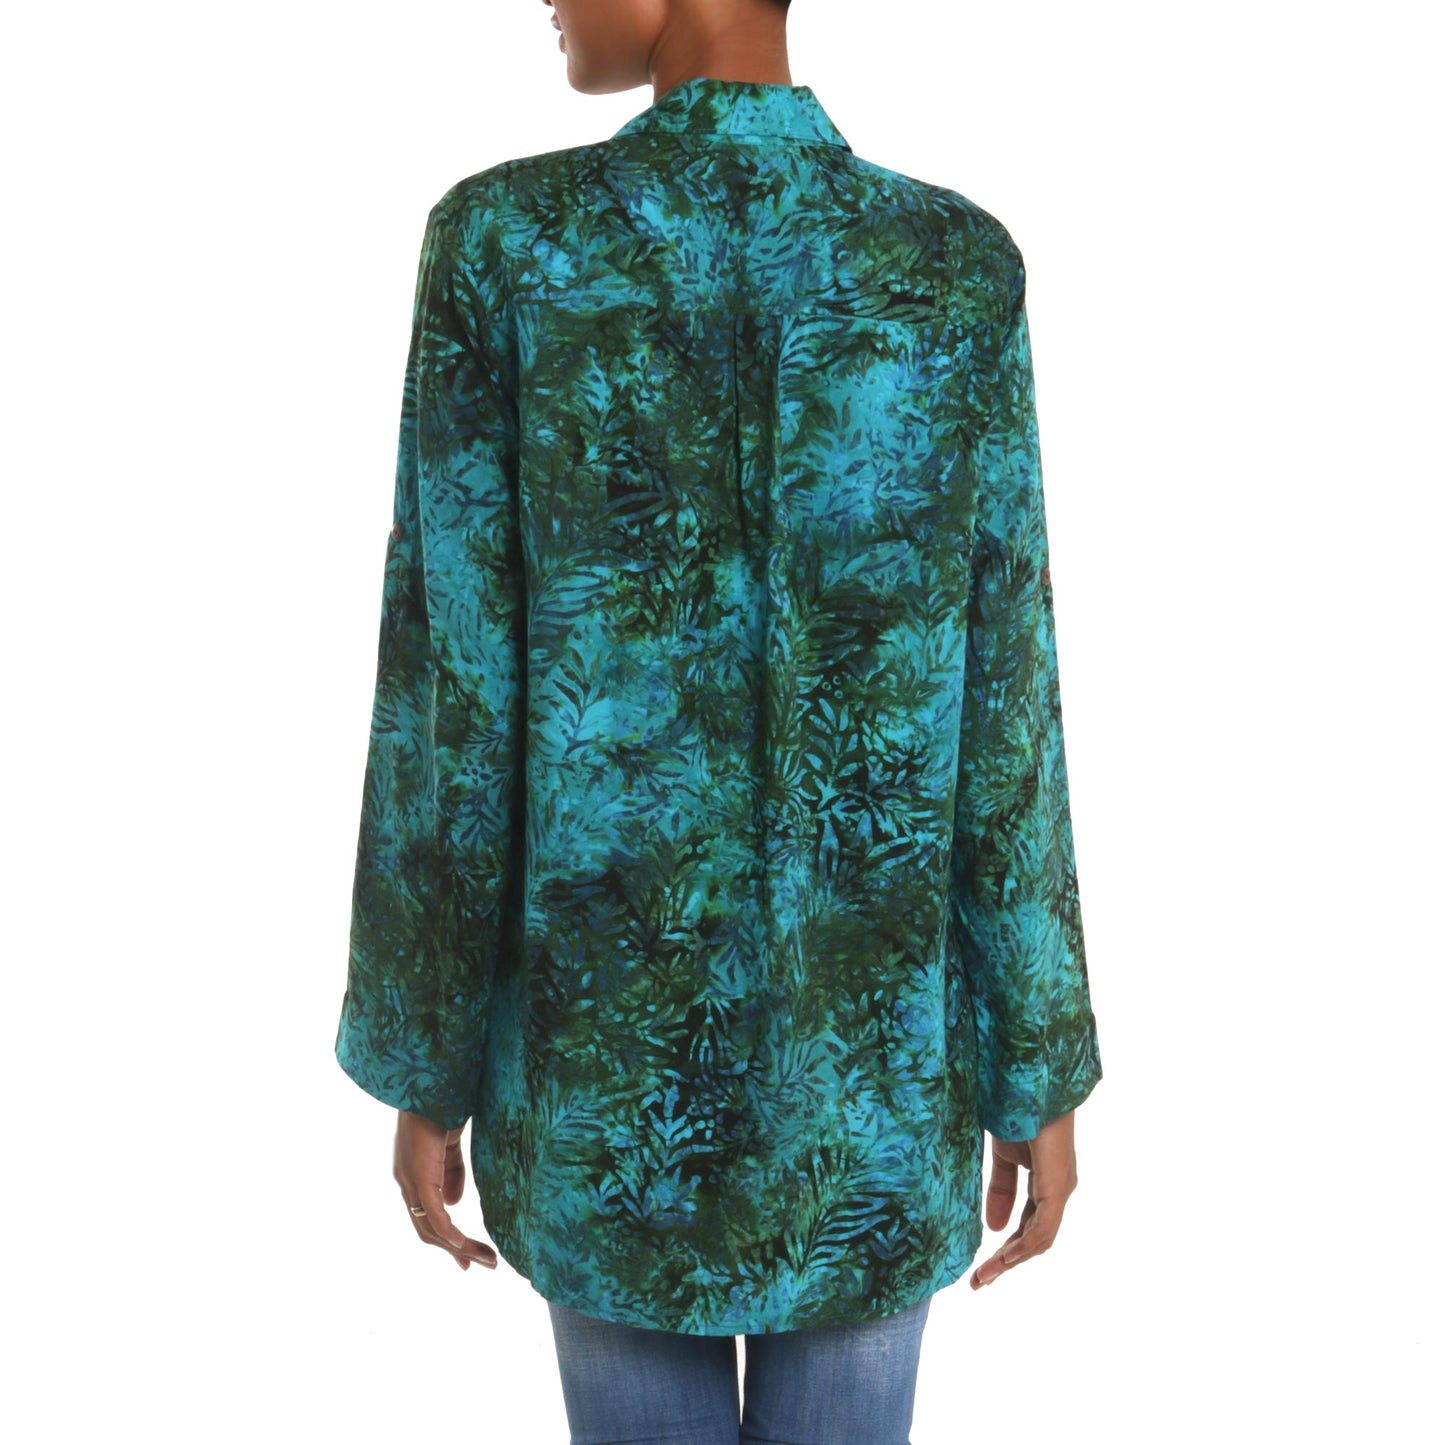 Java Emerald Rayon Batik Long Sleeve Teal Hi-Low Button Shirt